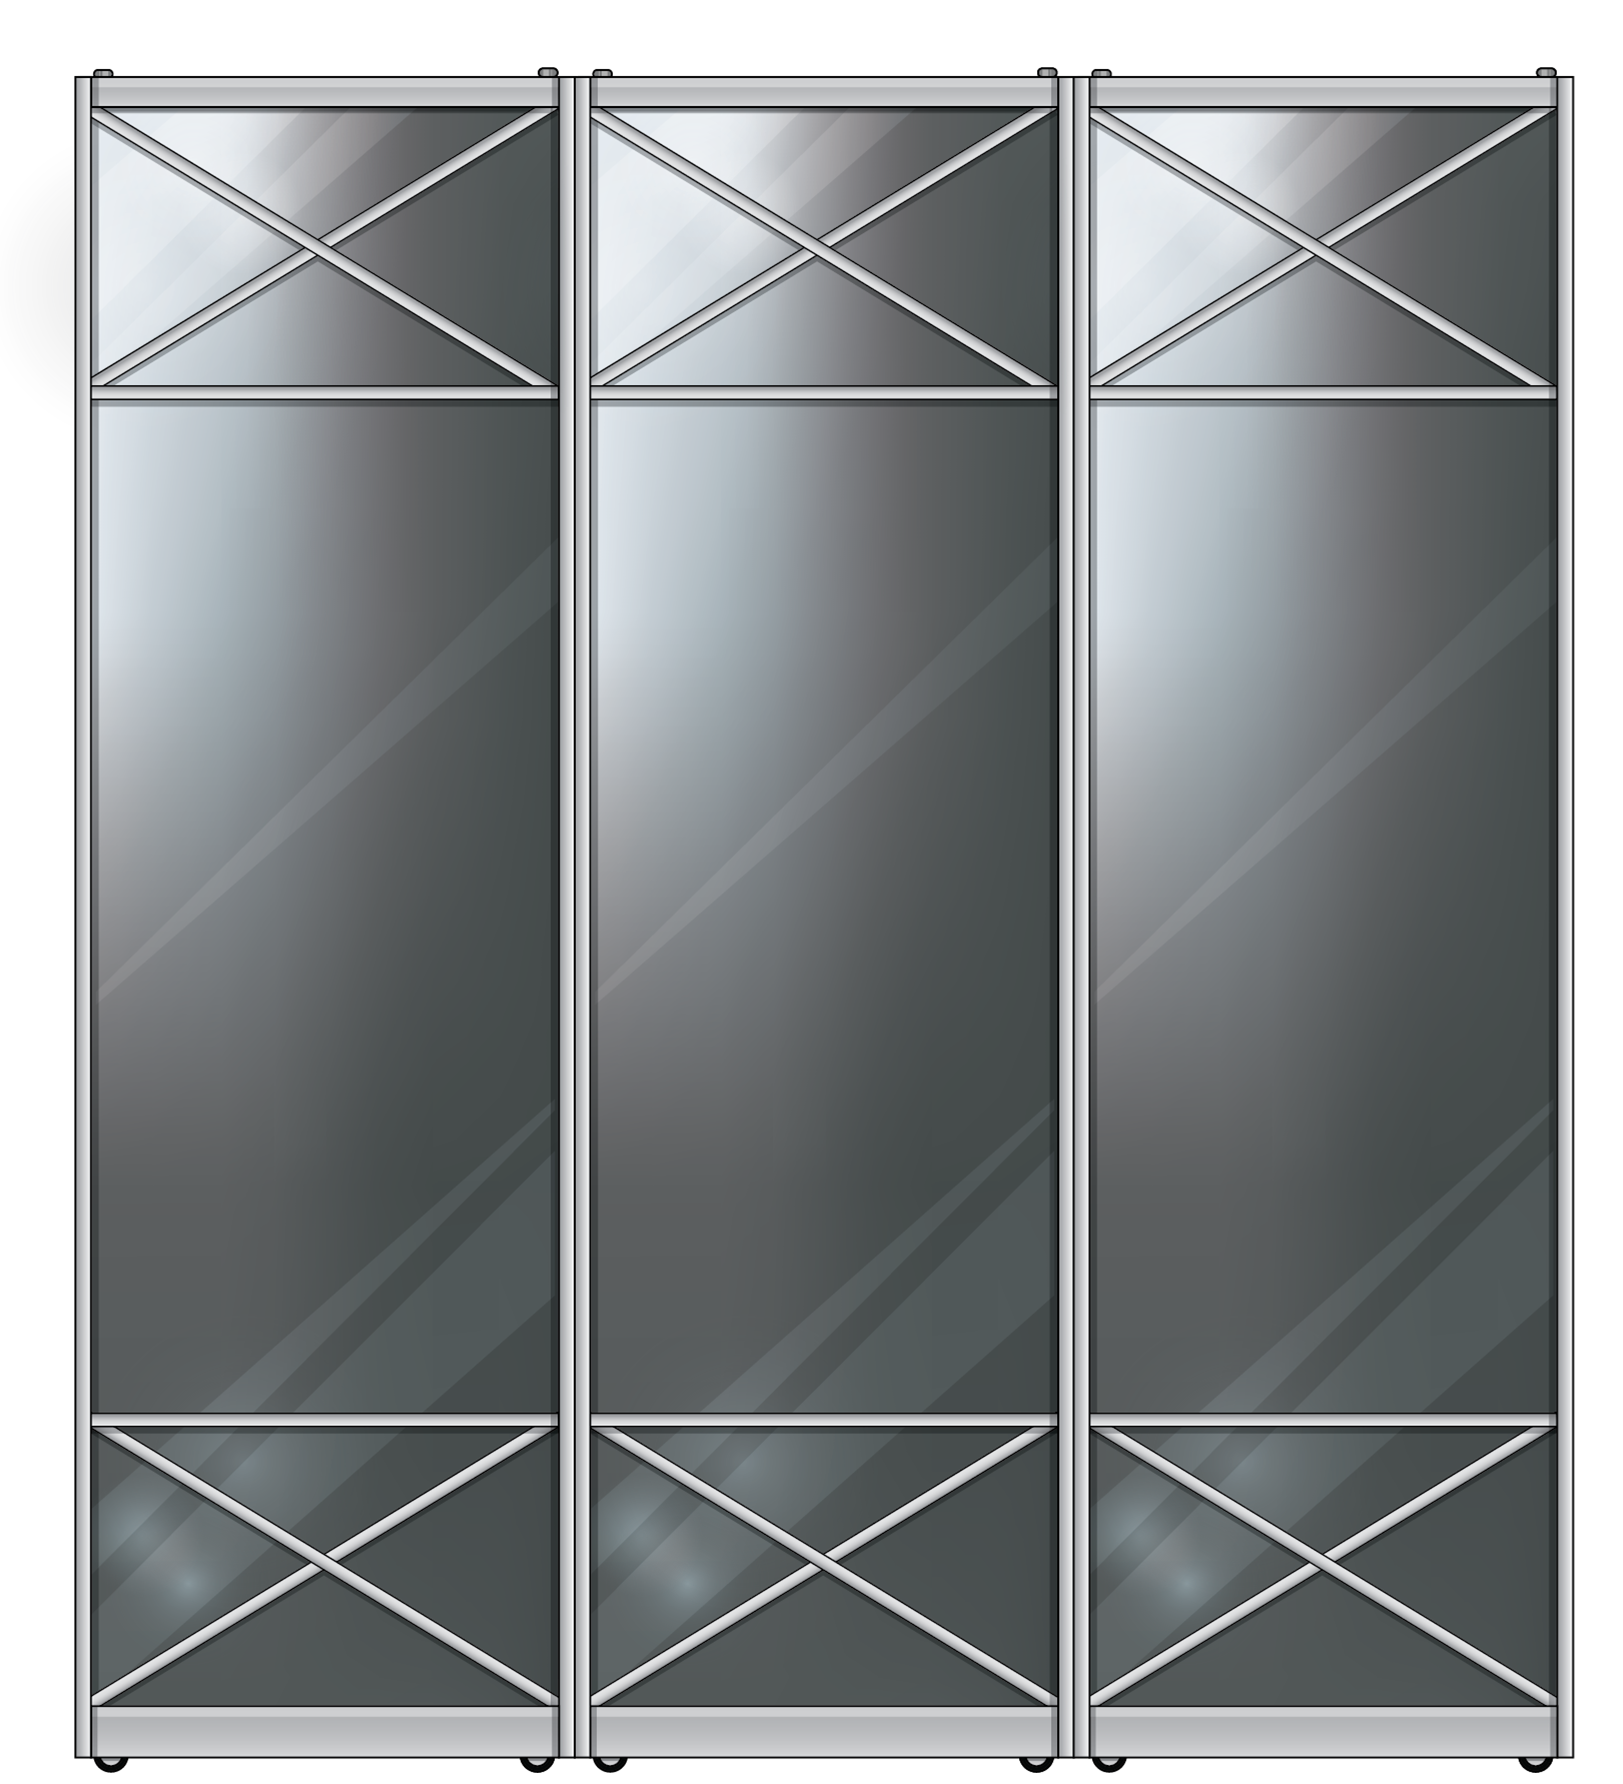 Kомбинированные двери для шкафов-купе